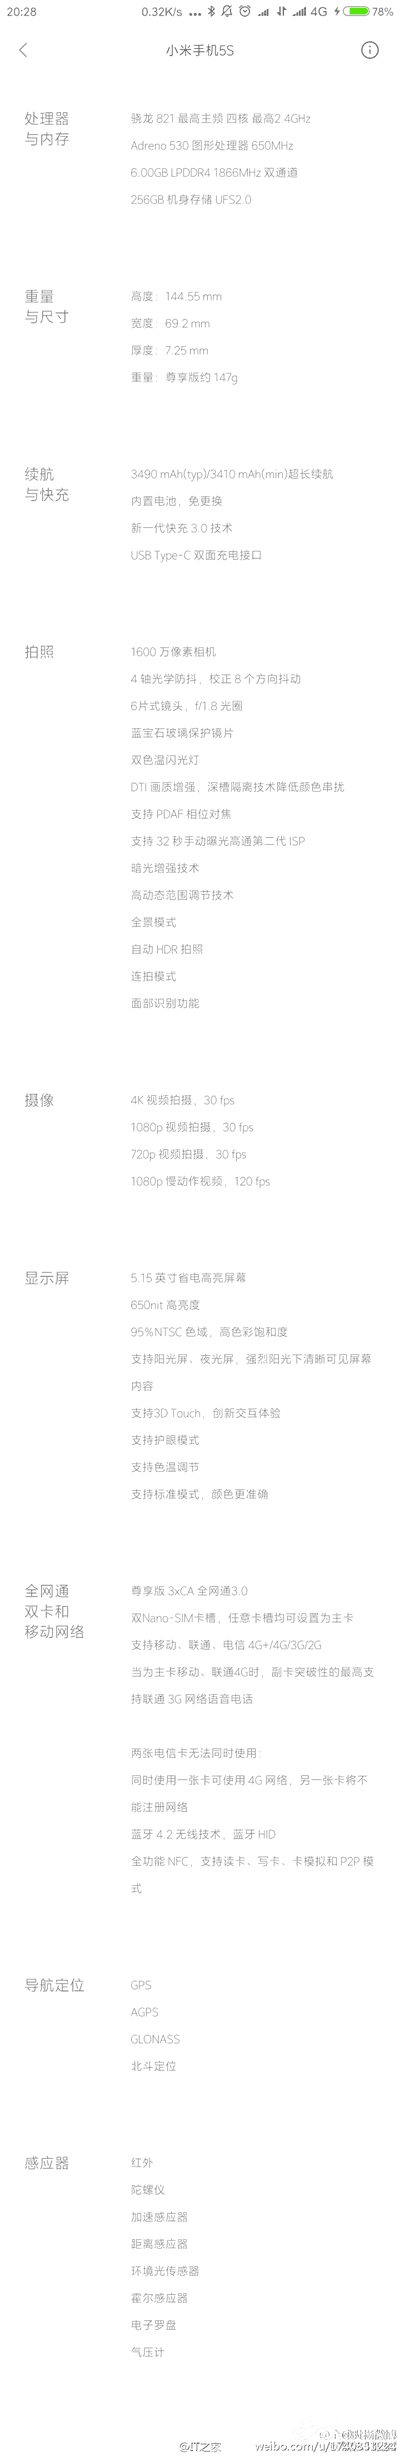 Данные о Xiaomi Mi 5s